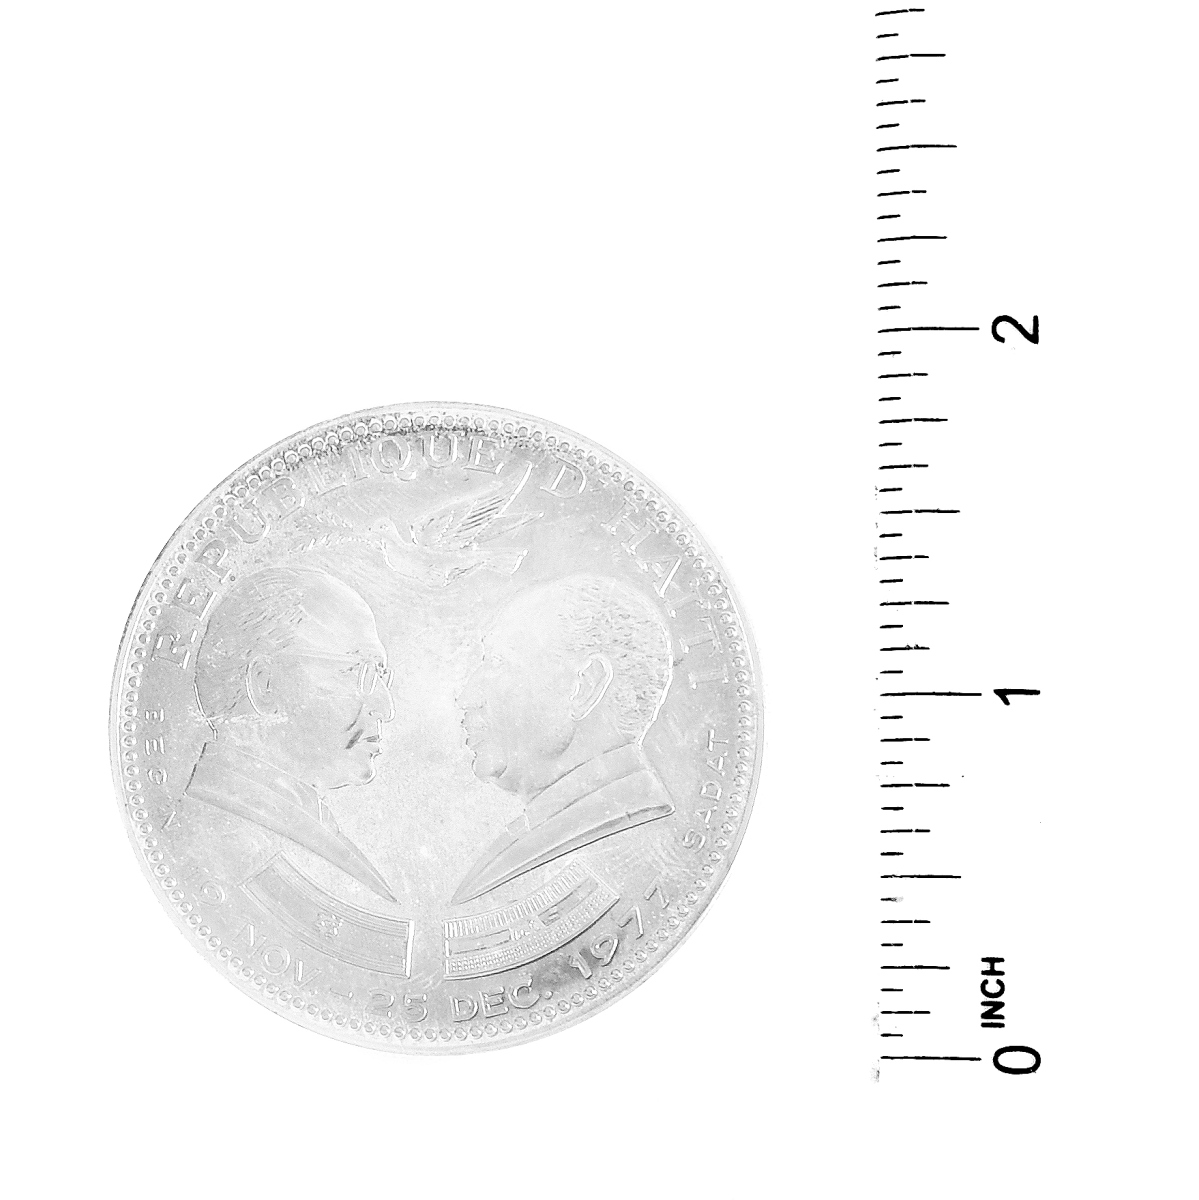 Three 1977 Haiti Silver Coins